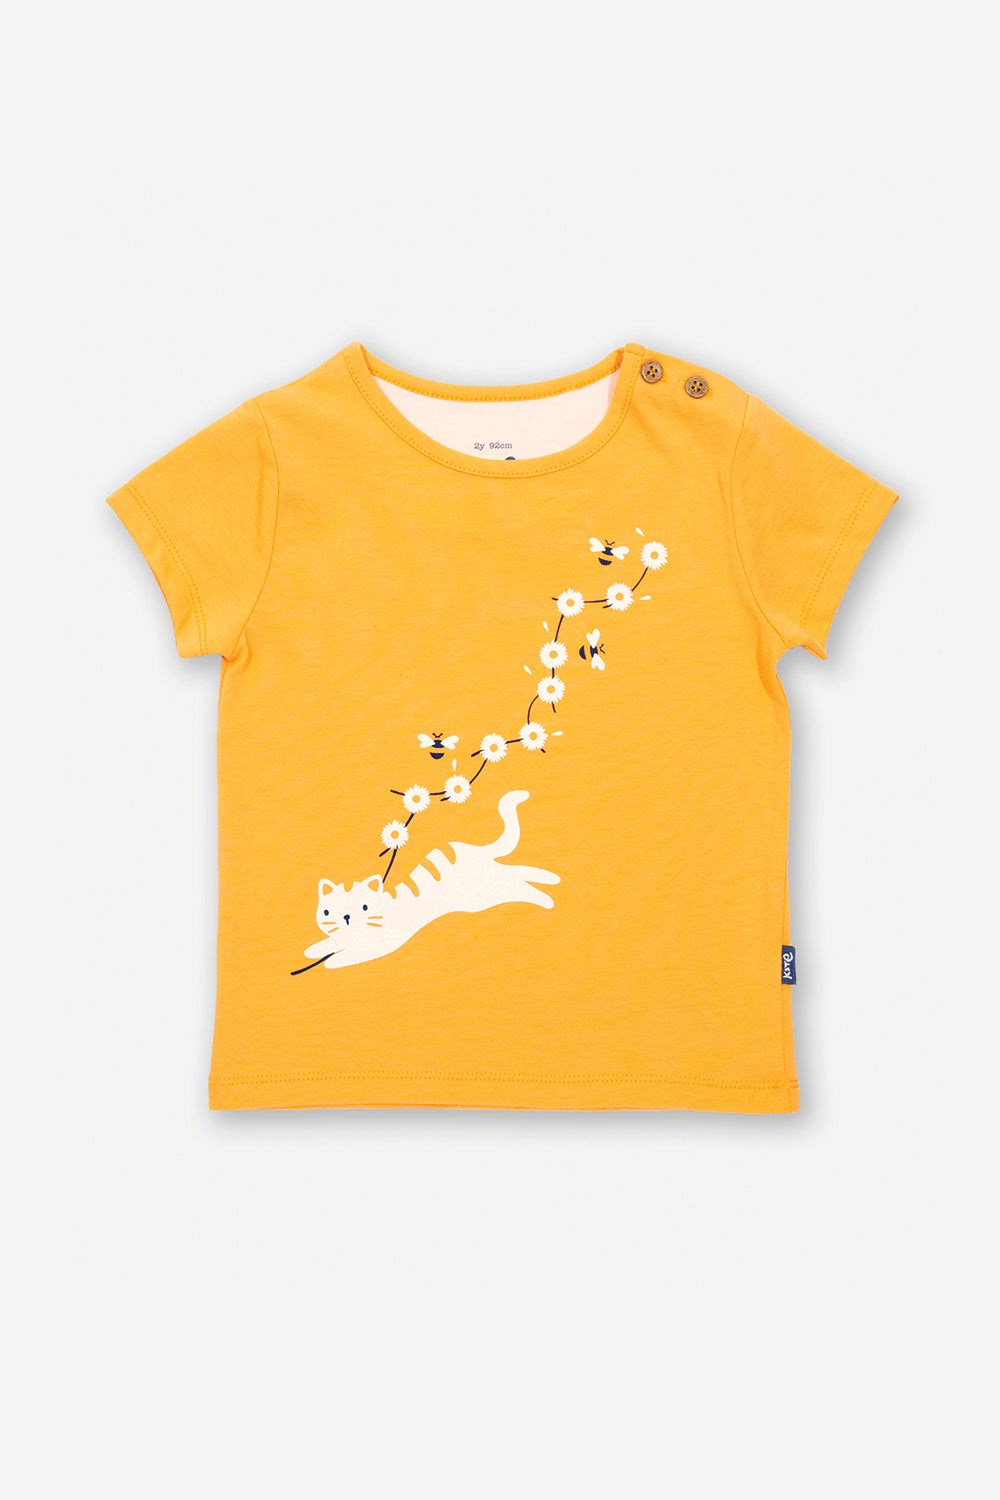 Kitty Cat Baby/kids T-shirt -